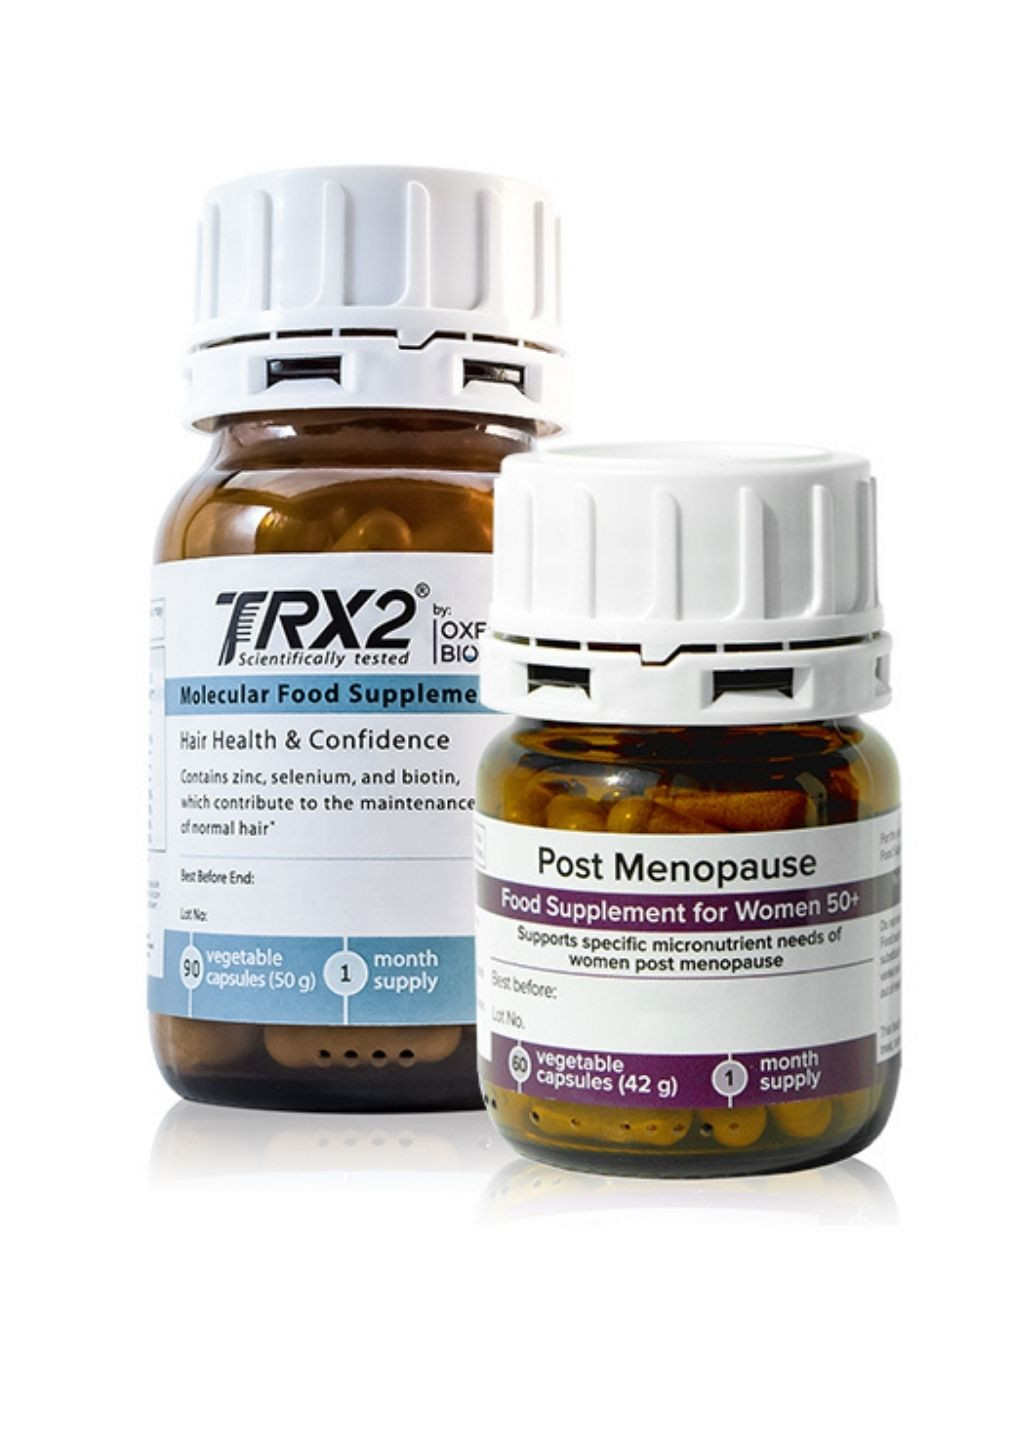 TRX2® Набор диетических добавок против выпадения волос у женщин в период постменопаузы Oxford Biolabs